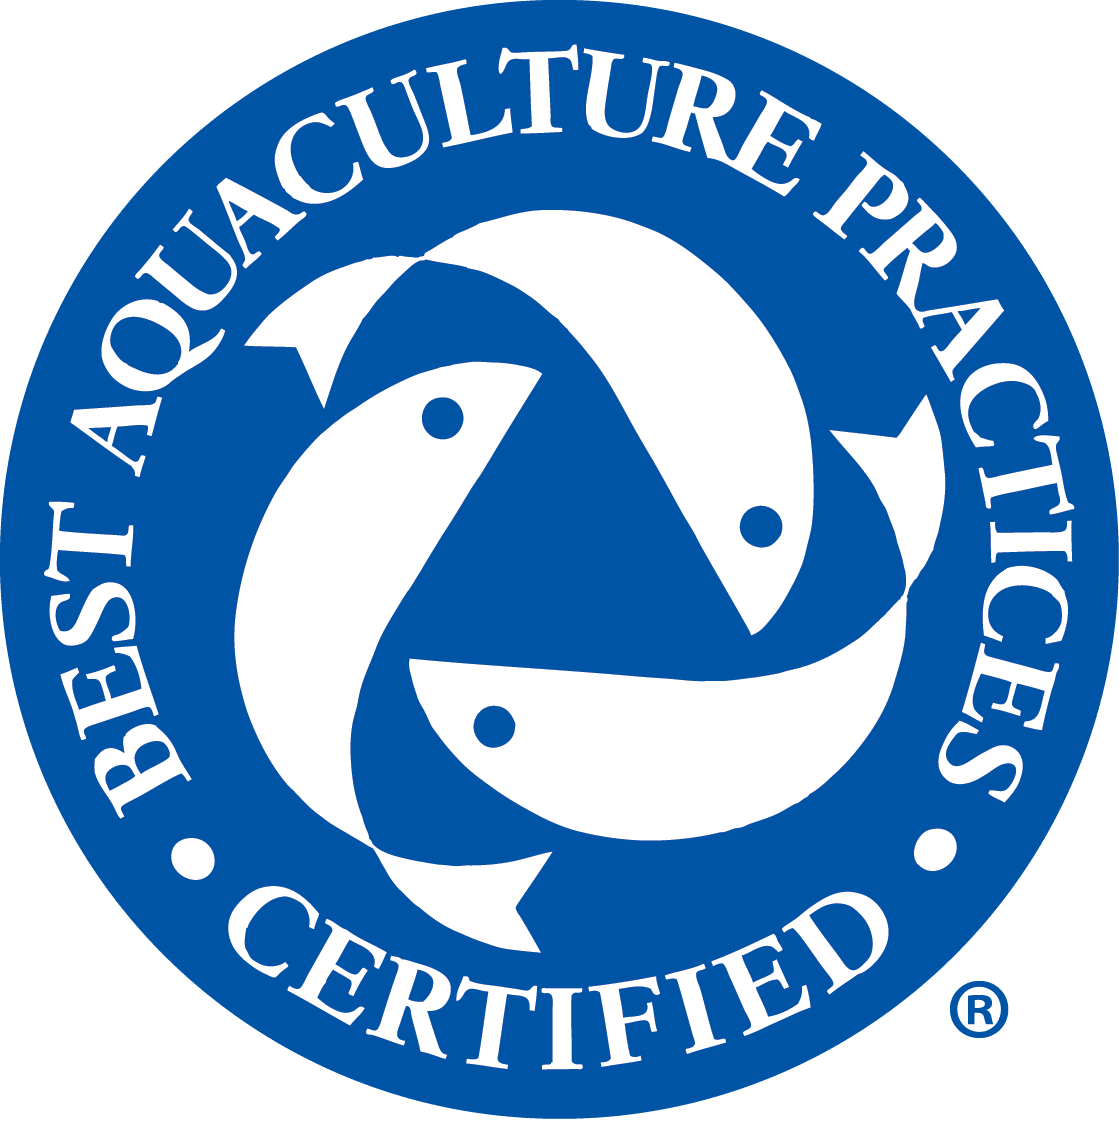 4 Star Bap Logo - Best Aquaculture Practices - Best Aquaculture Practices Certification